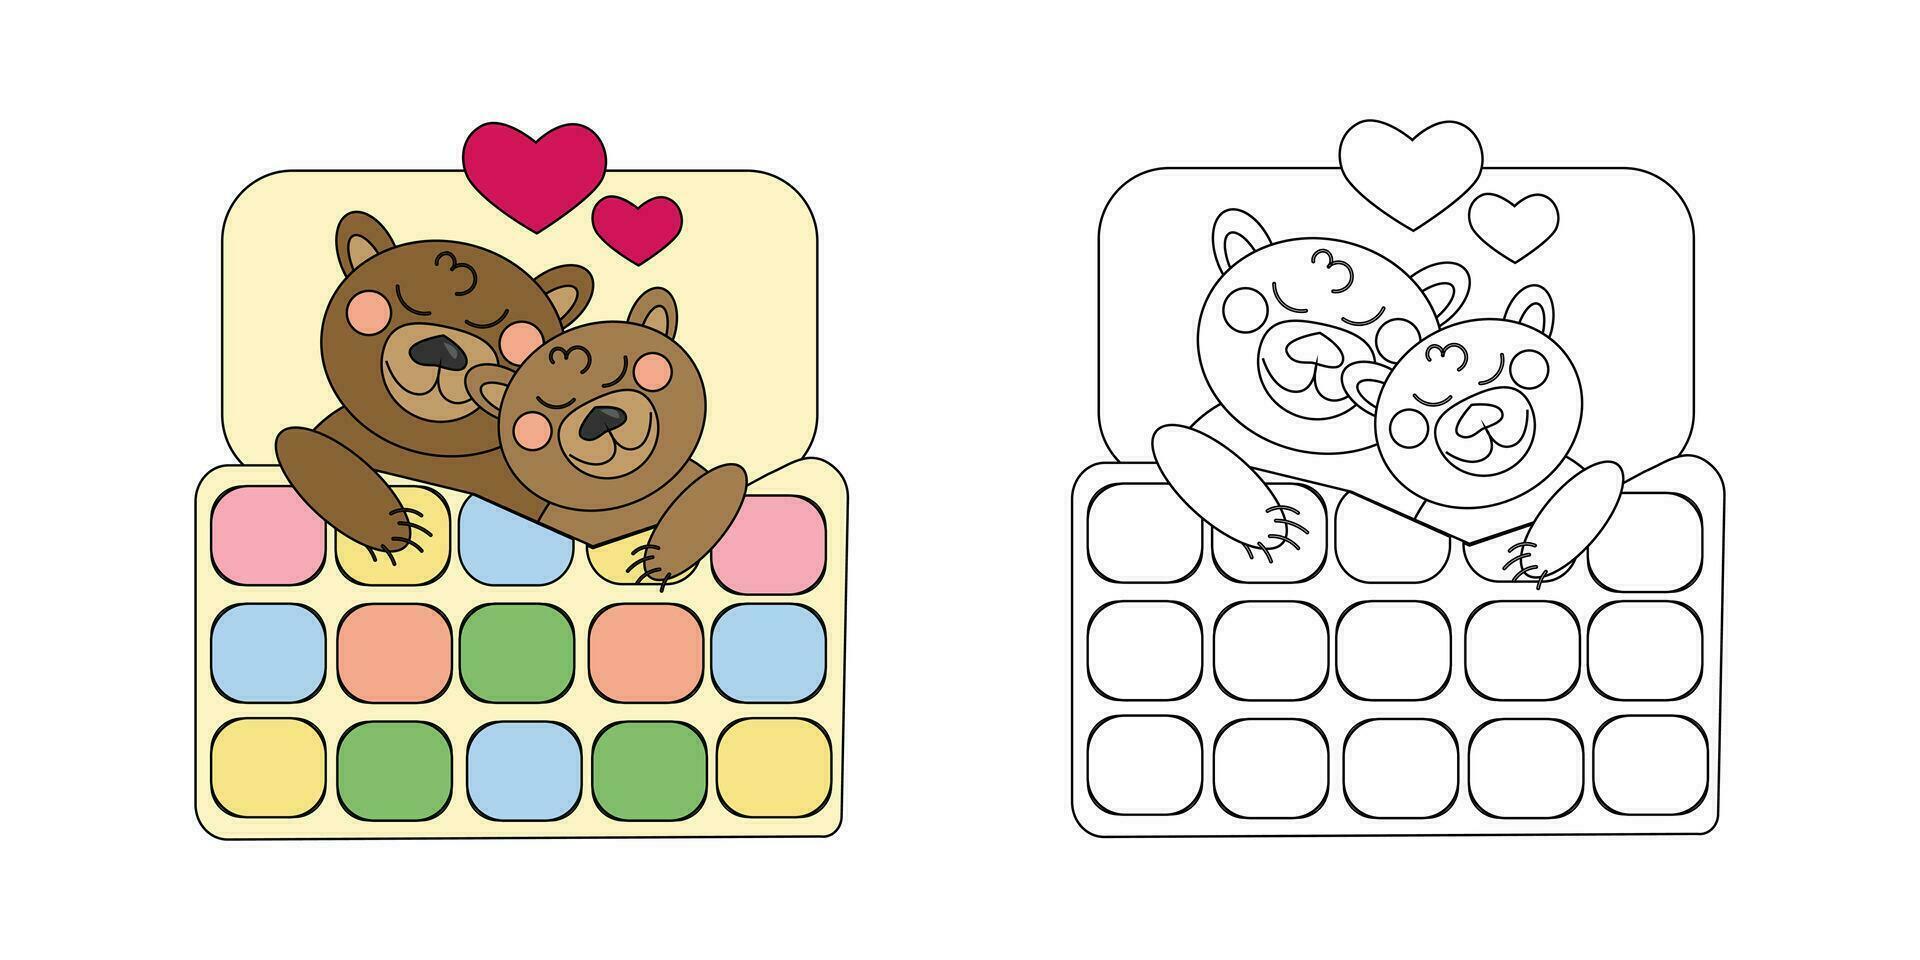 vector illustratie kleur boek twee braun bears in liefde slaap onder een lapwerk dekbed. een schets zwart en wit tekening en een kleur versie voor een voorbeeld.